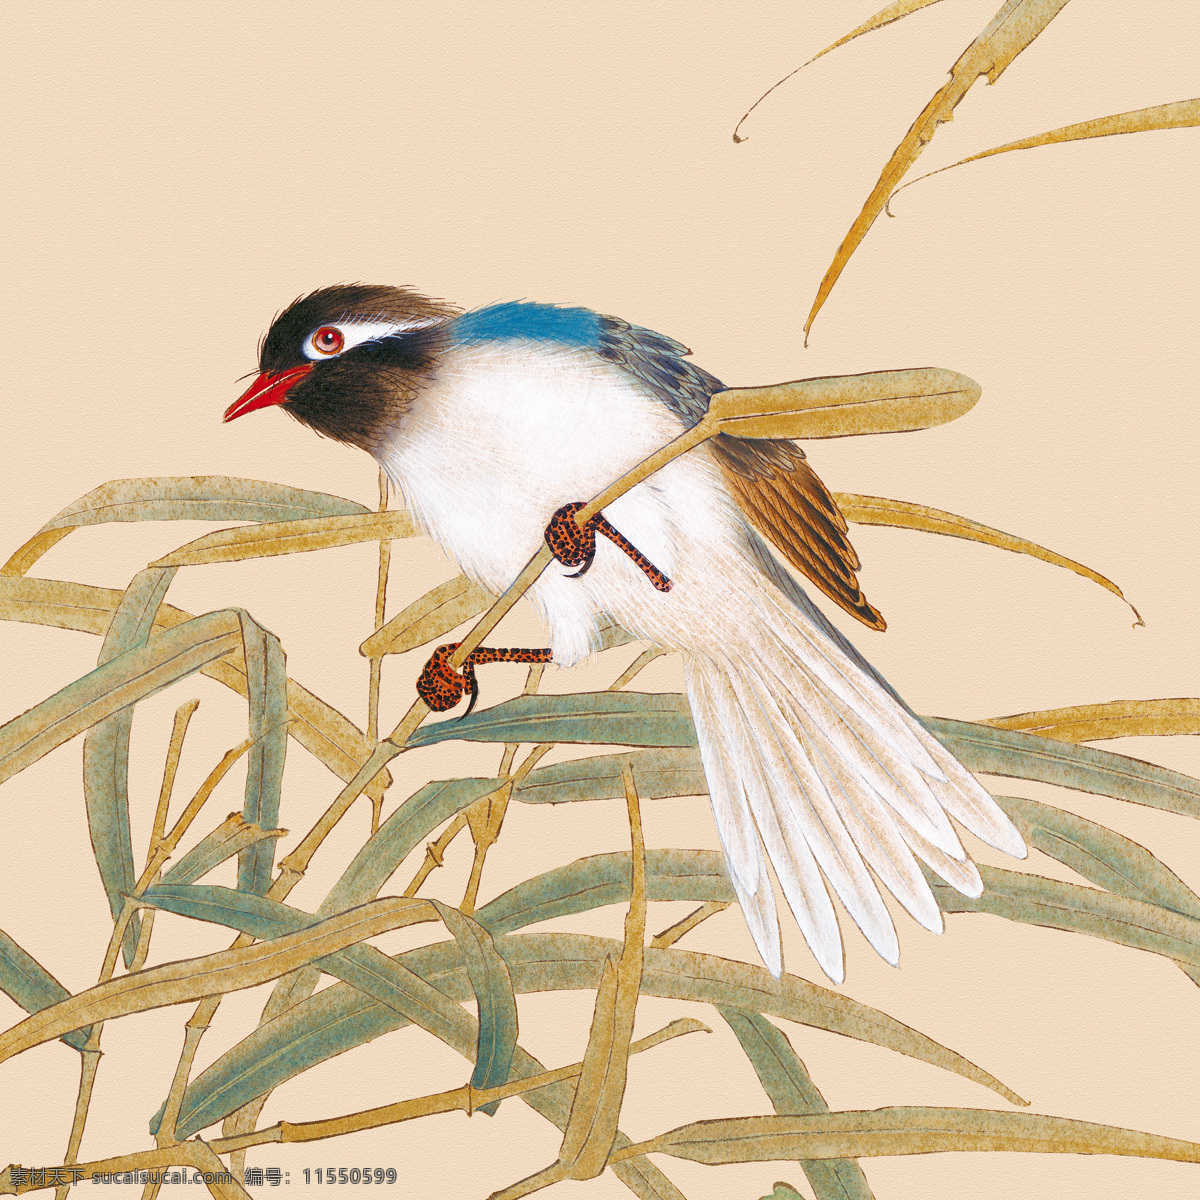 中式田园 工笔花鸟 芦苇 栩栩如生的鸟 中式画 高清 新中式 家居画 鸟 文化艺术 绘画书法